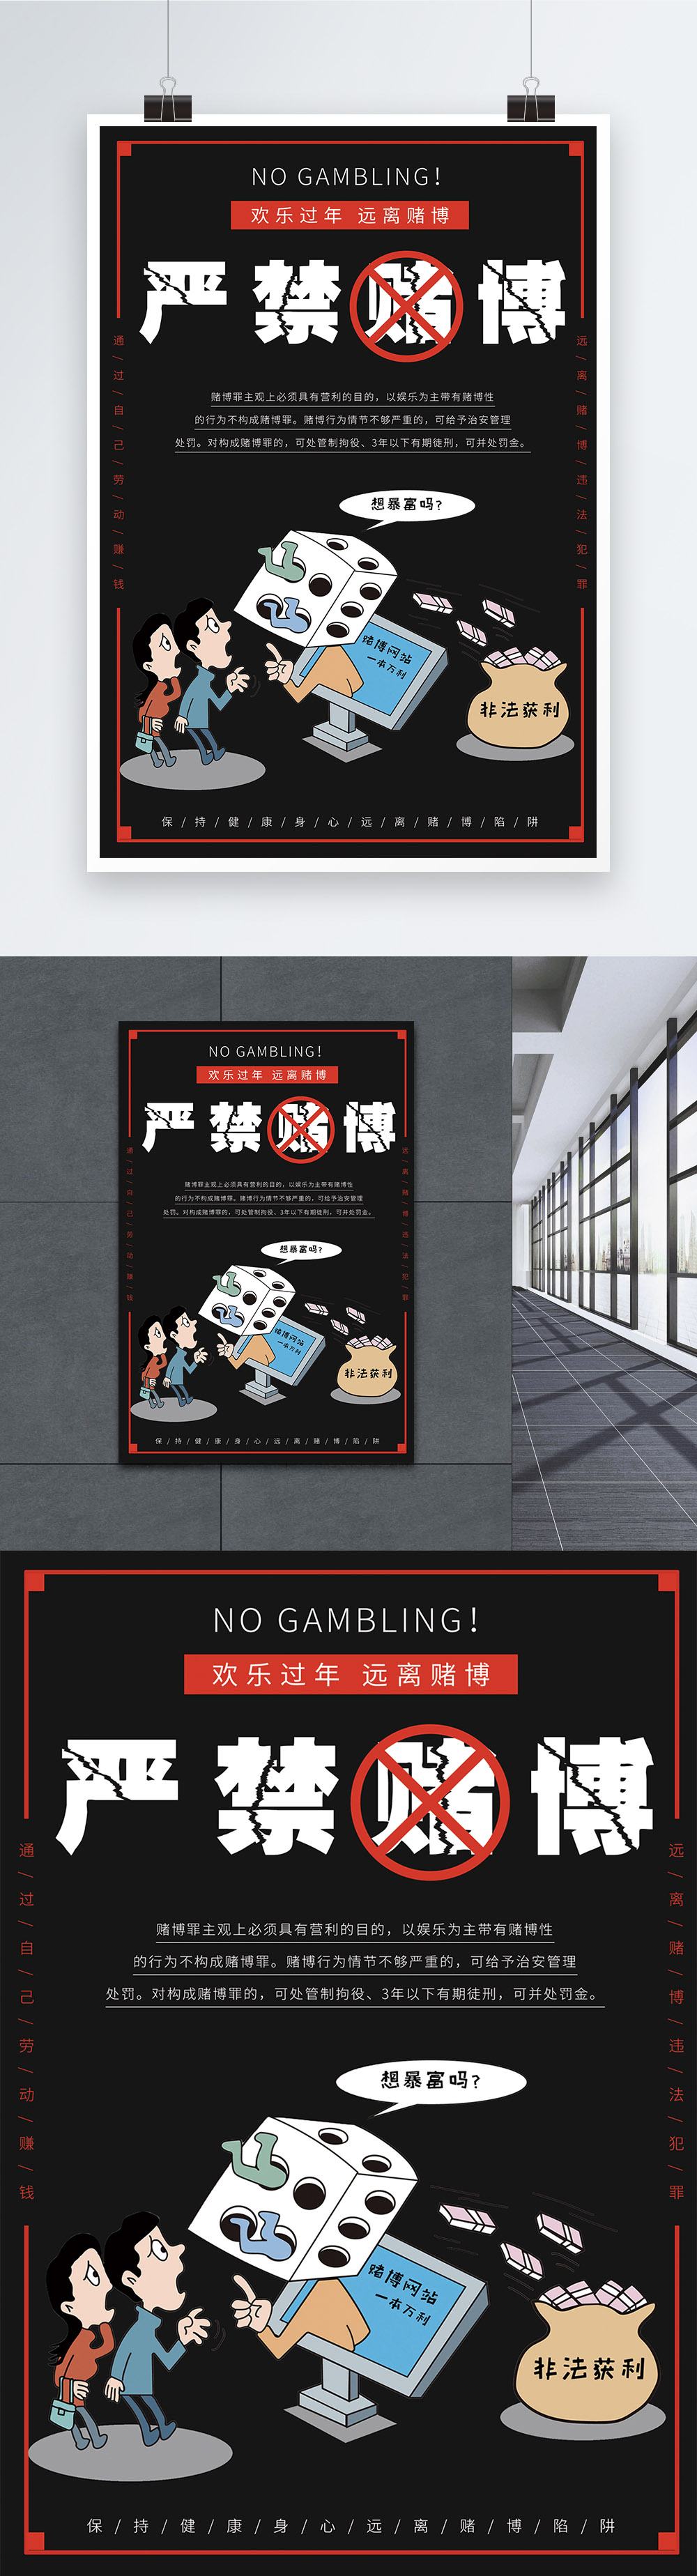 Anti Gambling Posters